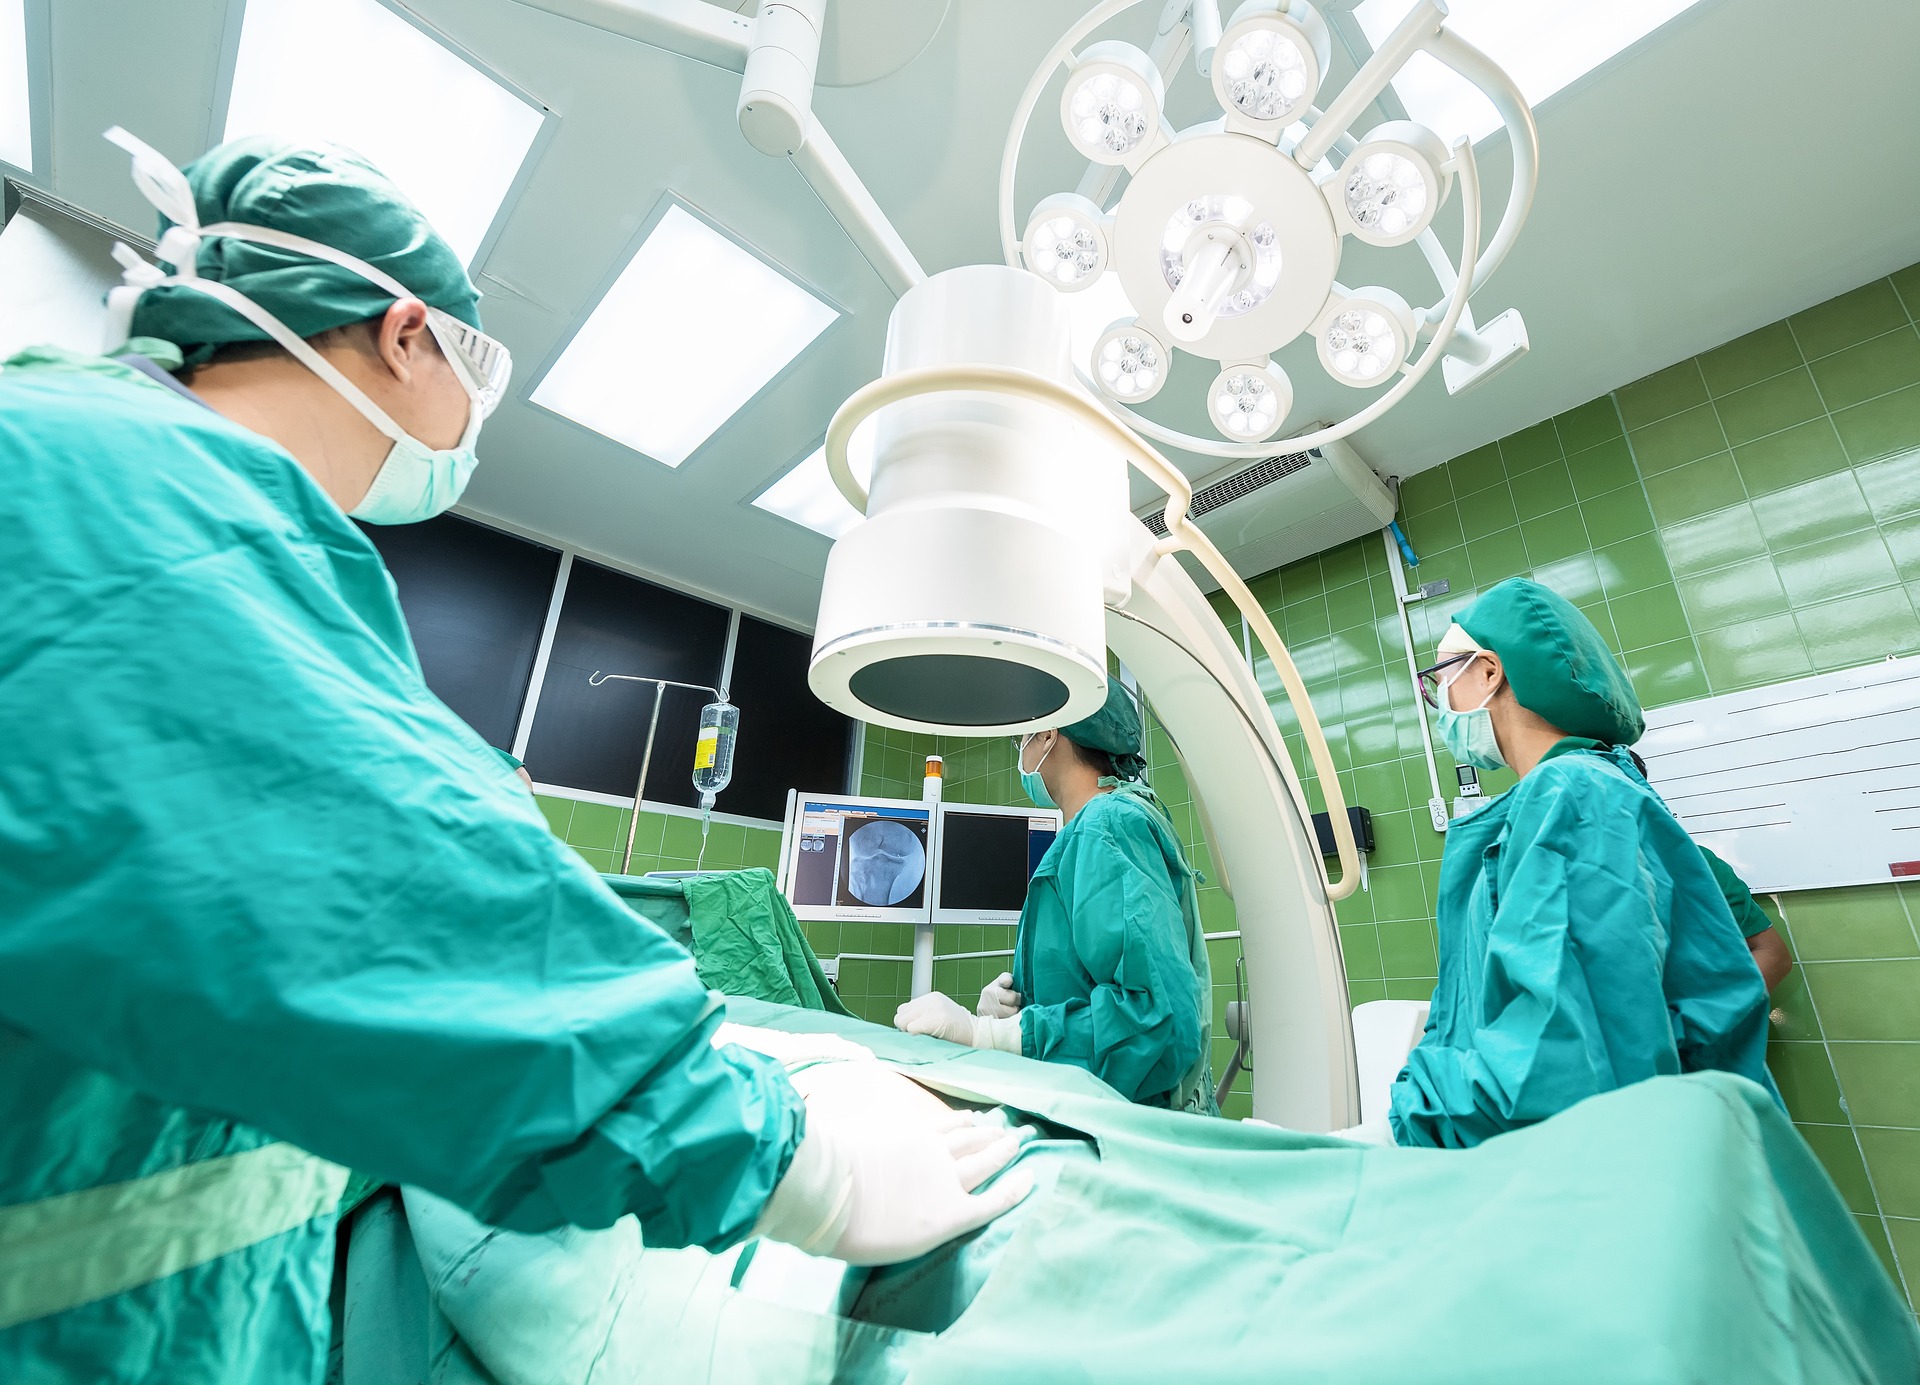 Leczenie chirurgiczne w szpitalu Medfemina - dlaczego warto?